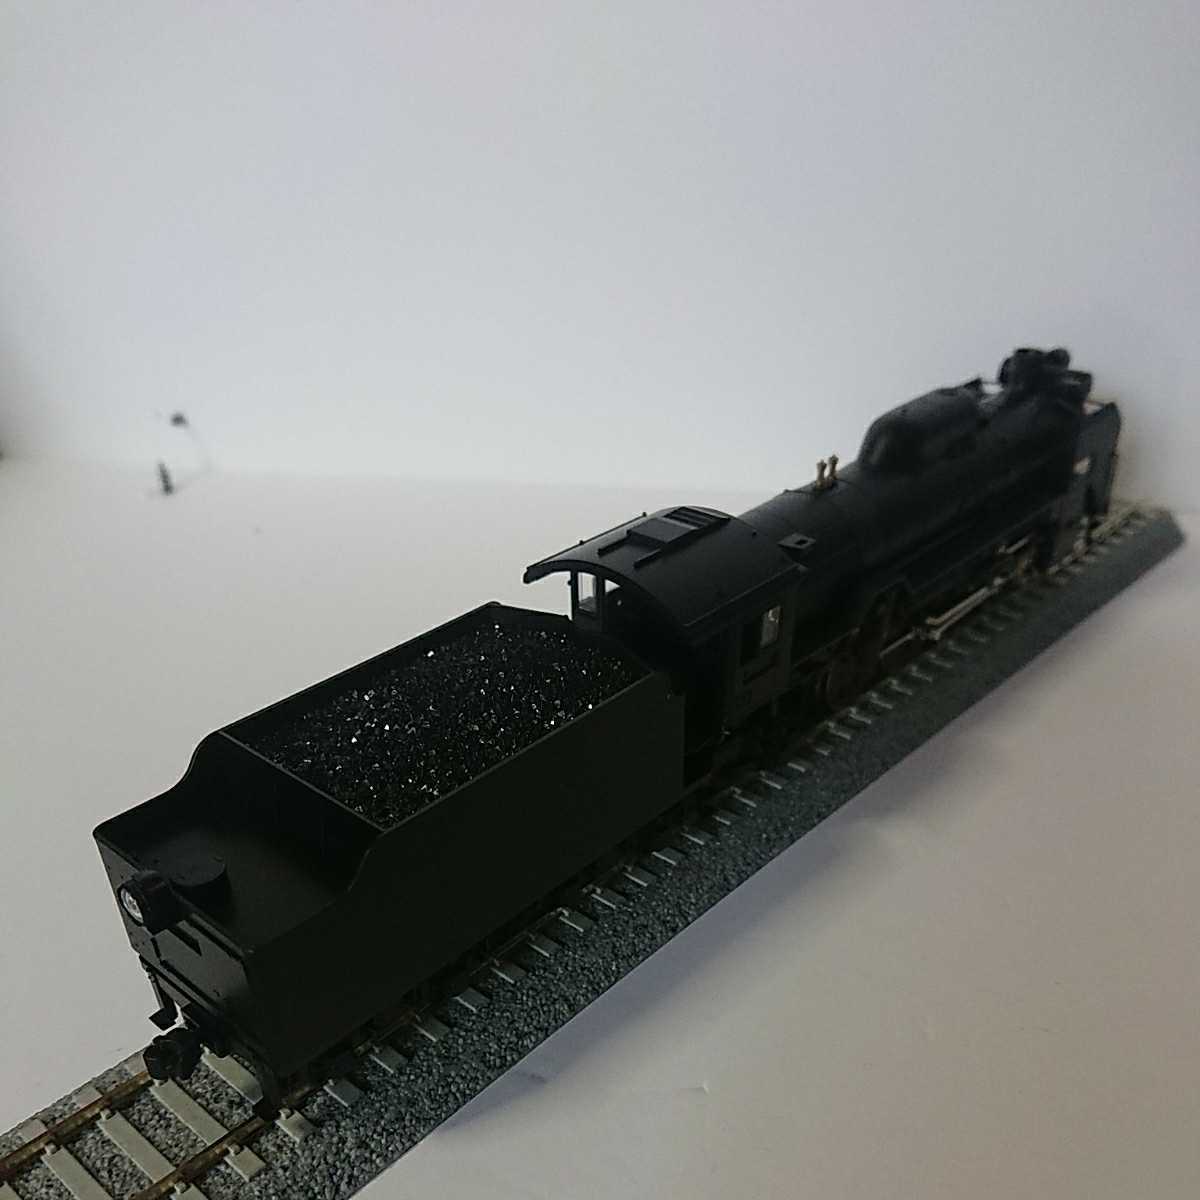 KATO 1-202 HOゲージ D51 標準形 蒸気機関車 プラスチック製品 - 鉄道模型